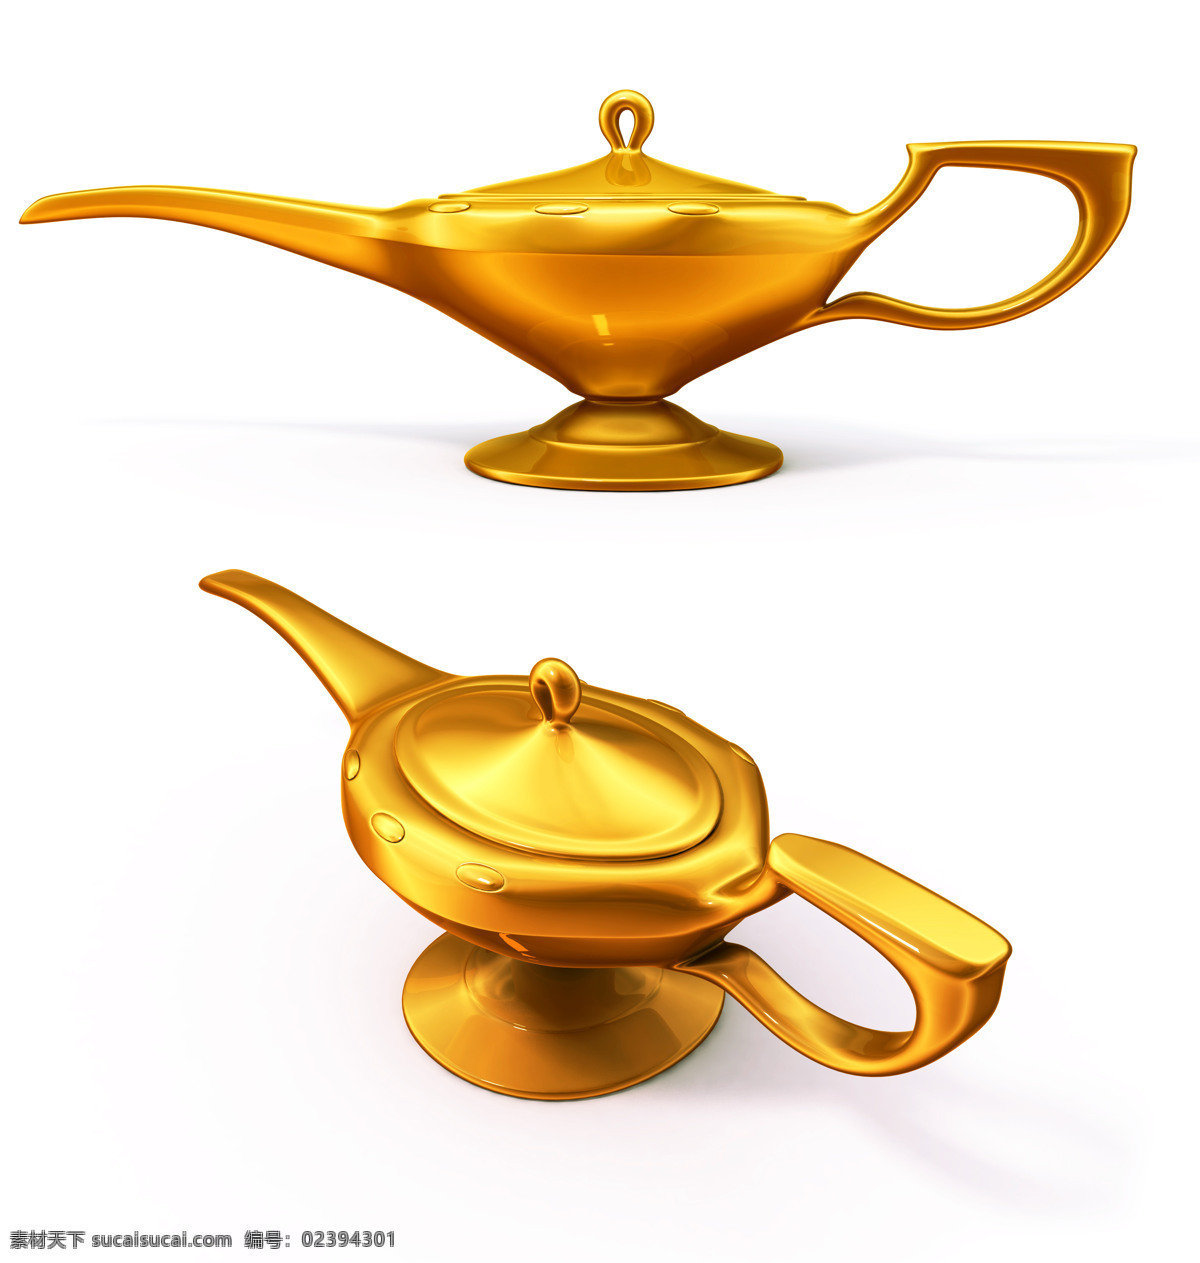 阿拉丁神灯 神话 铜器 黄金 灯具 器皿 传说传奇 文化艺术 传统文化